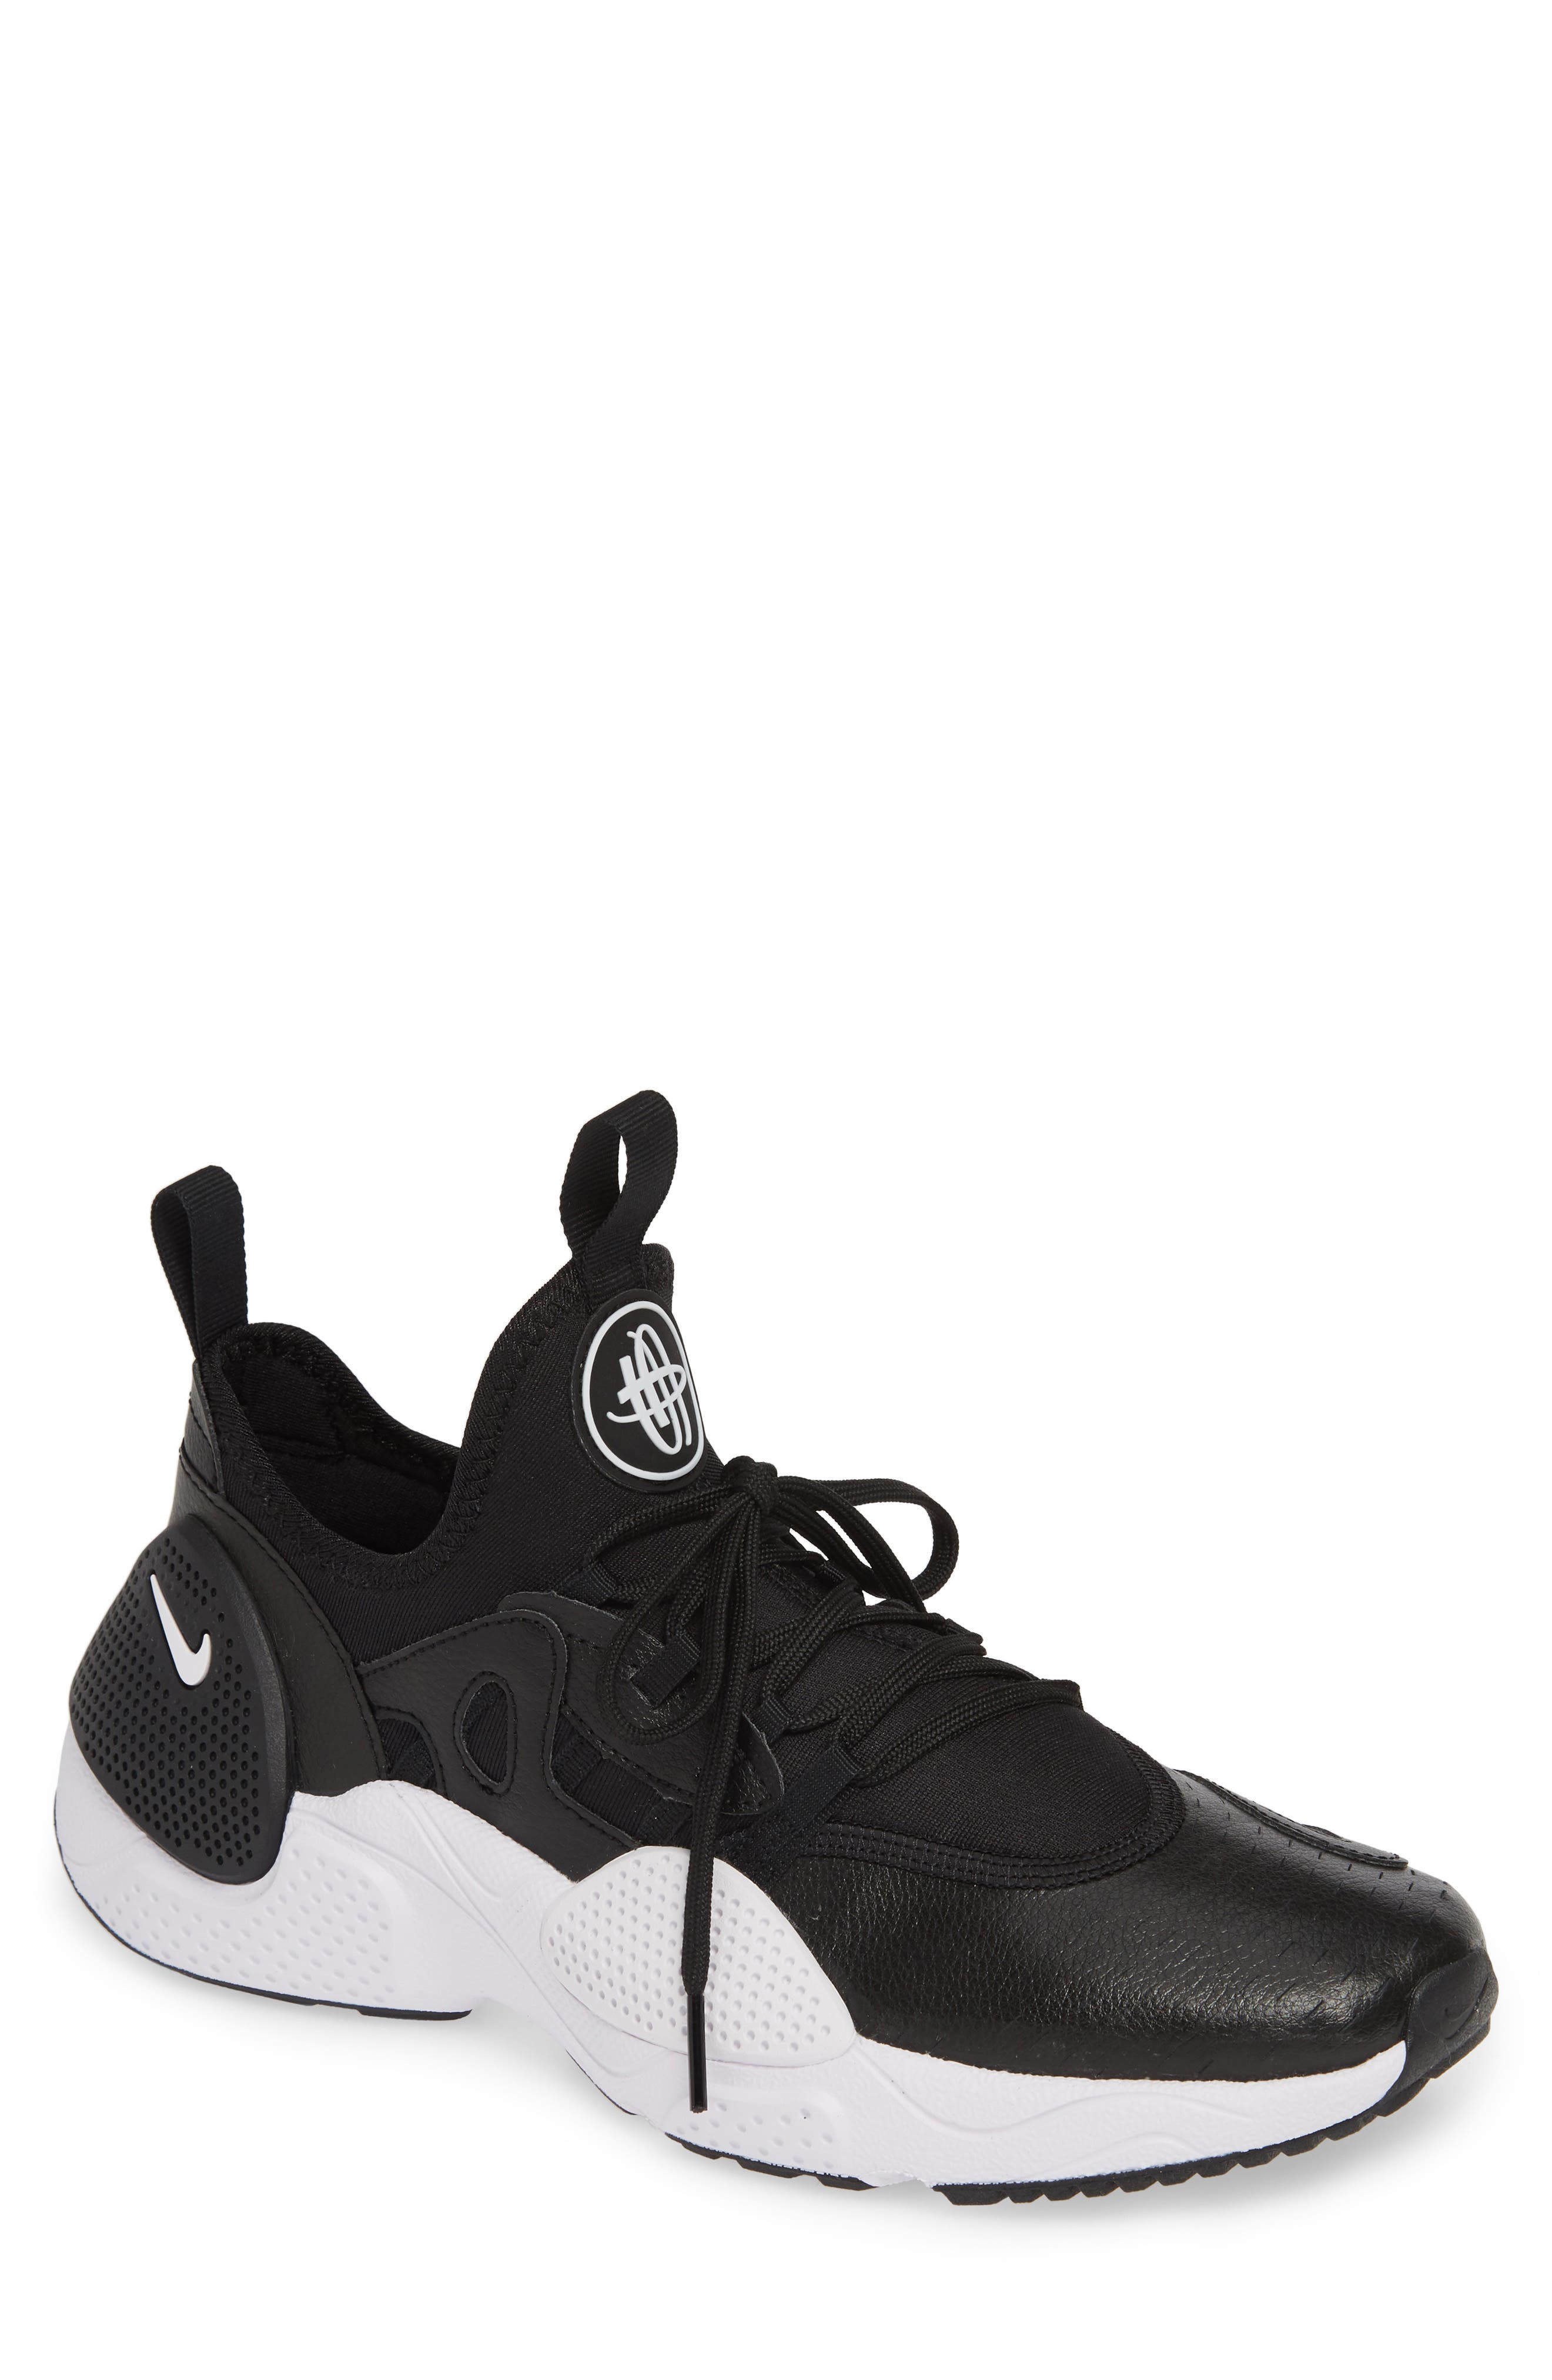 air huarache basketball shoes